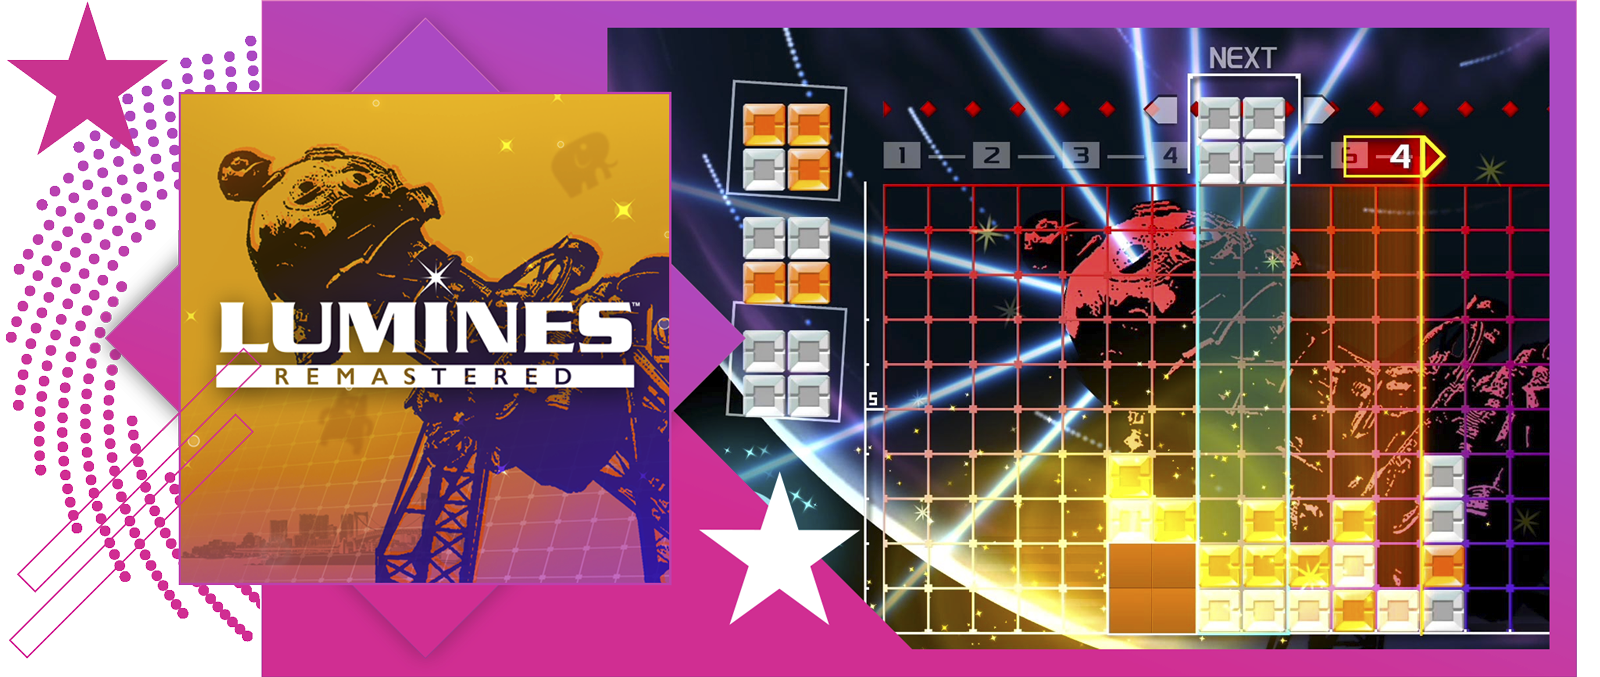 Kép a legjobb ritmusjátékok cikkhez, a Lumines Remastered fő grafikájával és játékmenetével.